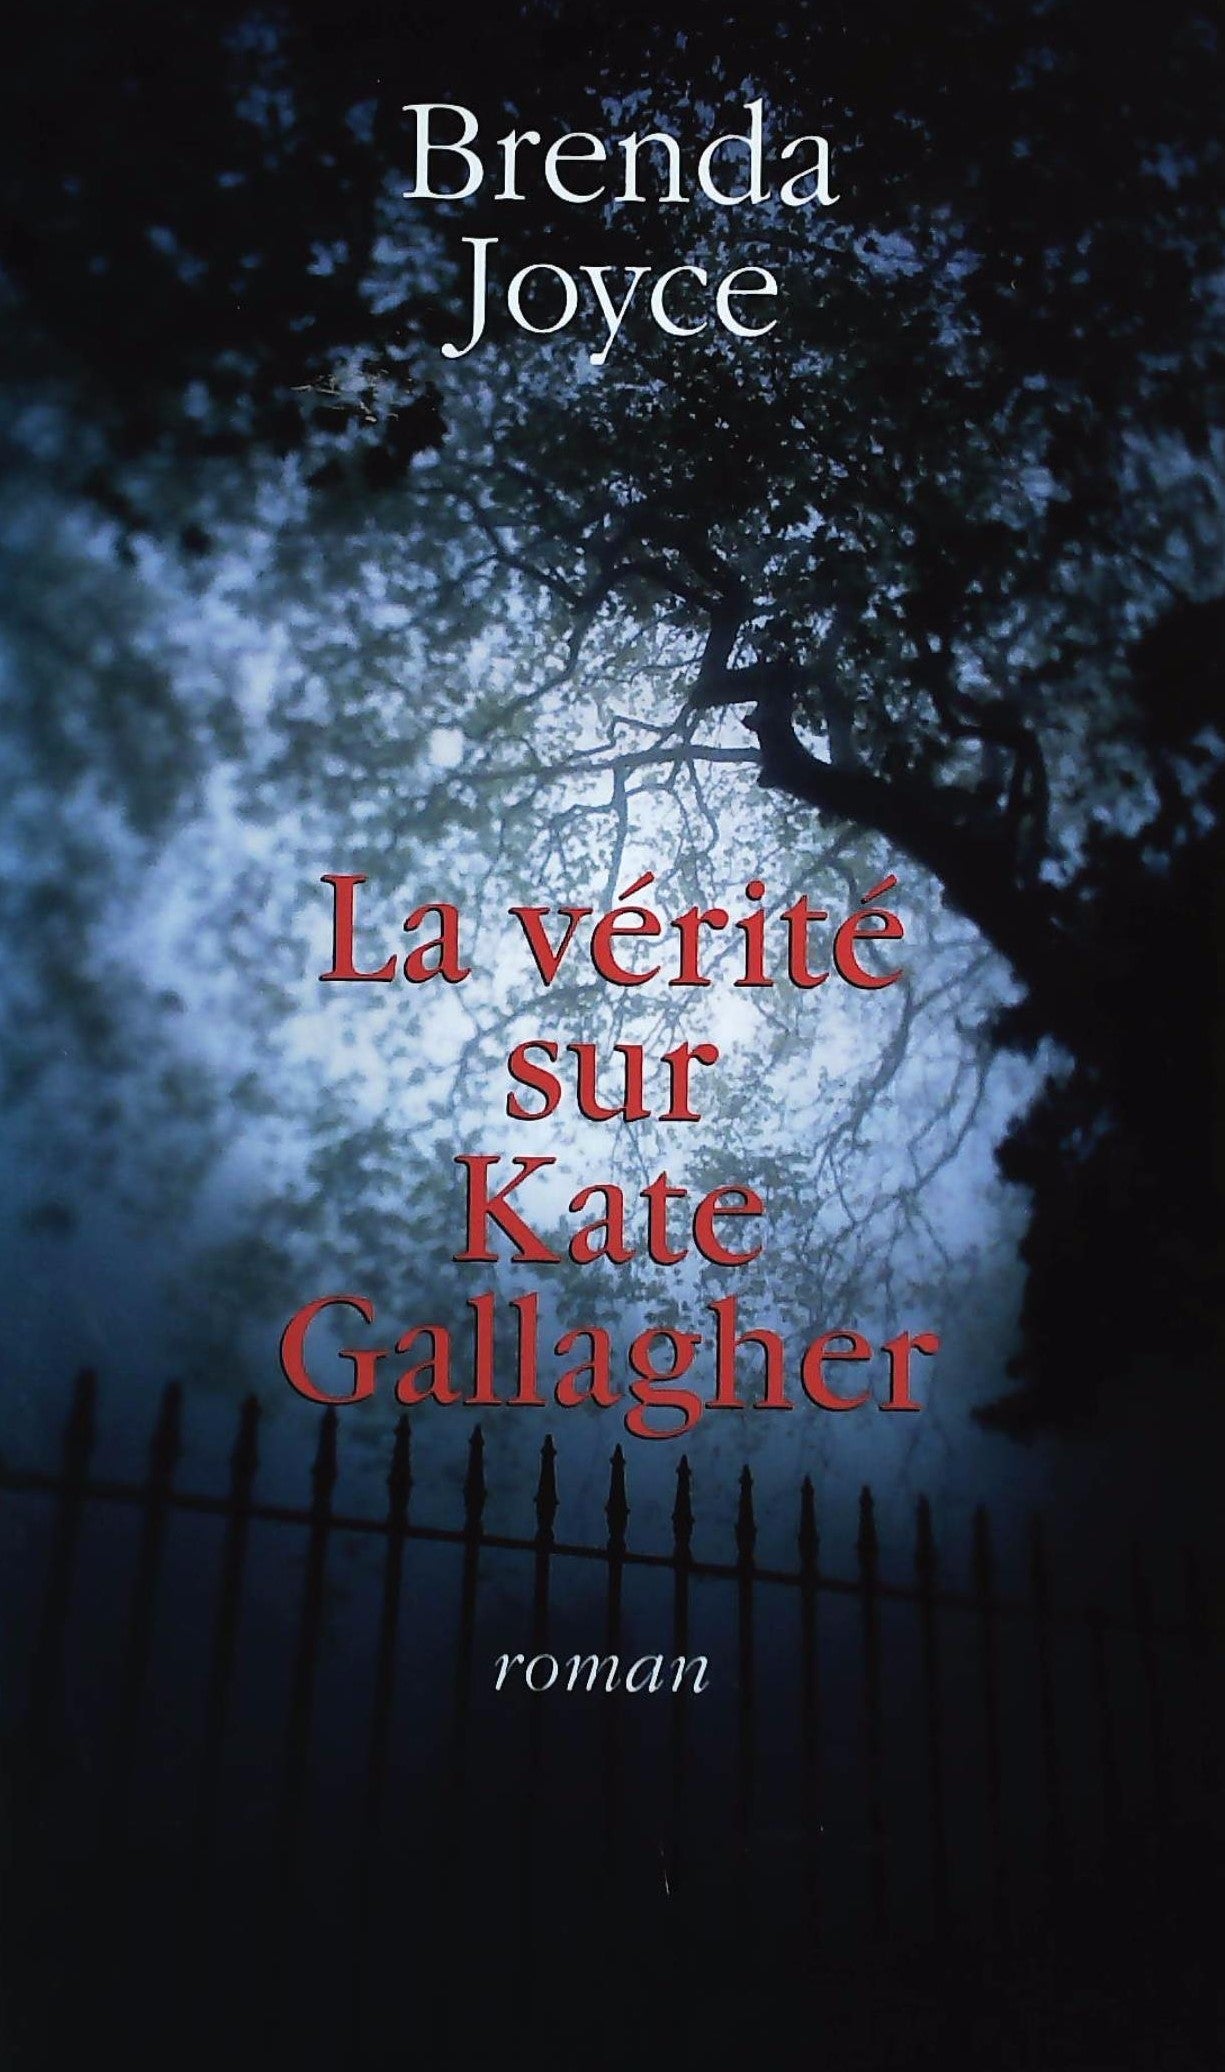 Livre ISBN 2744160725 La vérité sur Kate Gallagher (Brenda Joyce)